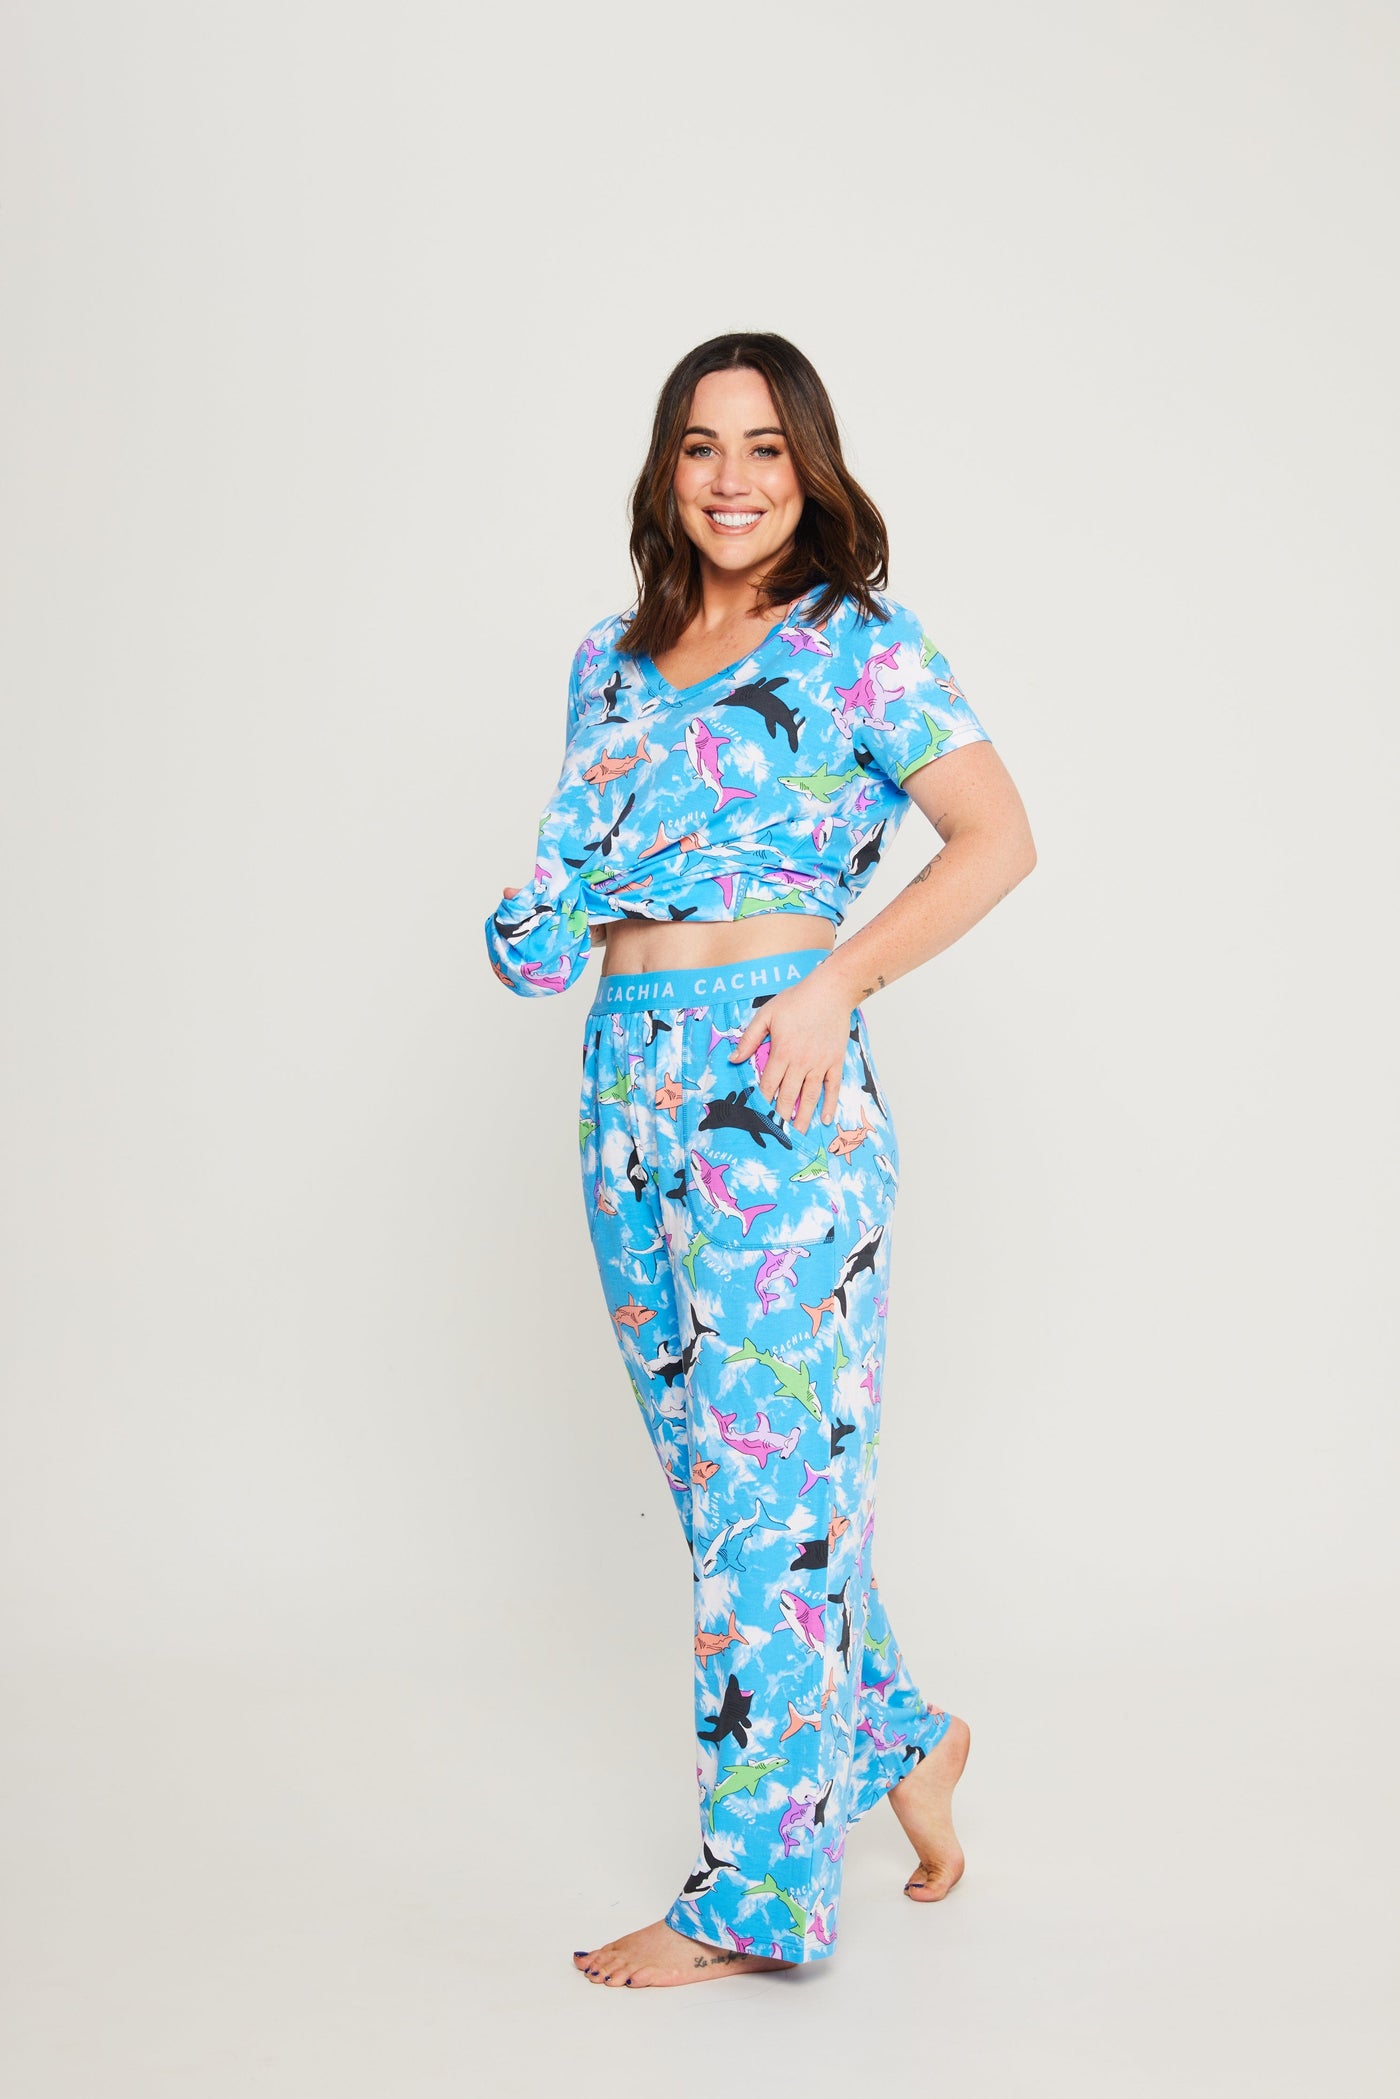 Cachia Zoomer - Womens Pajamas